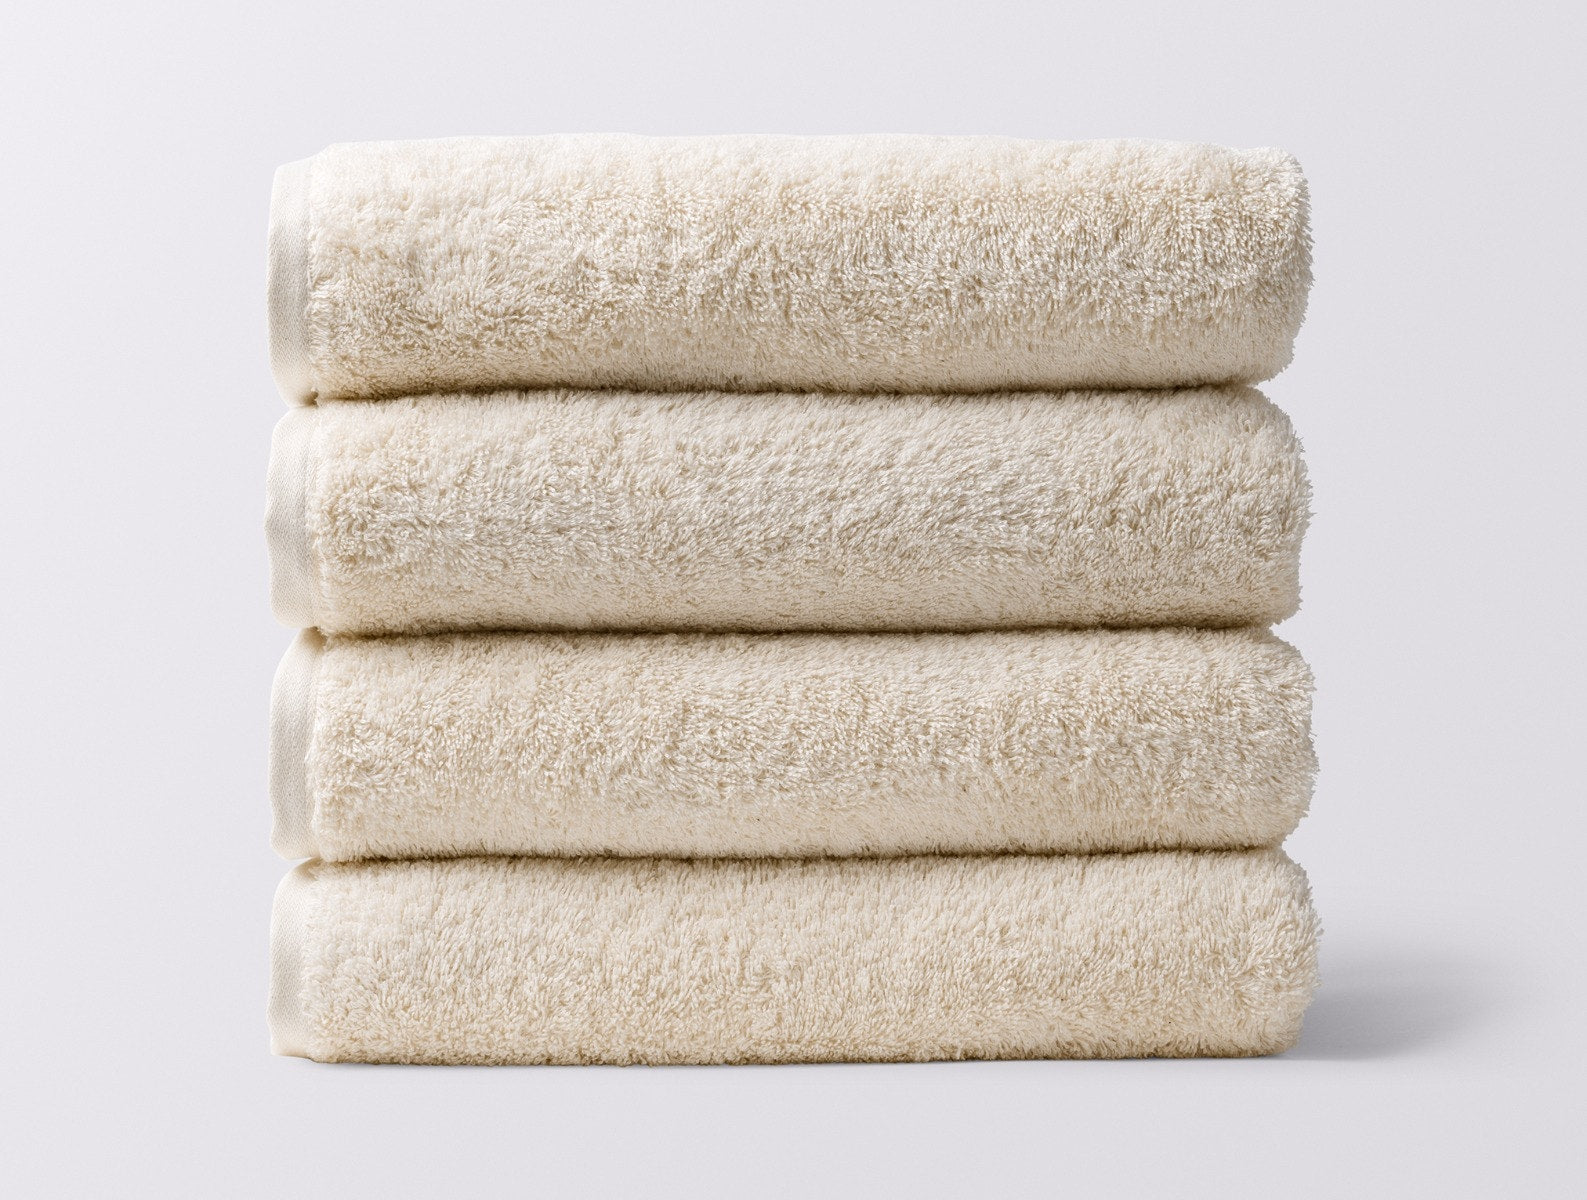 Undyed / 4 pc Set (4 bath towels)